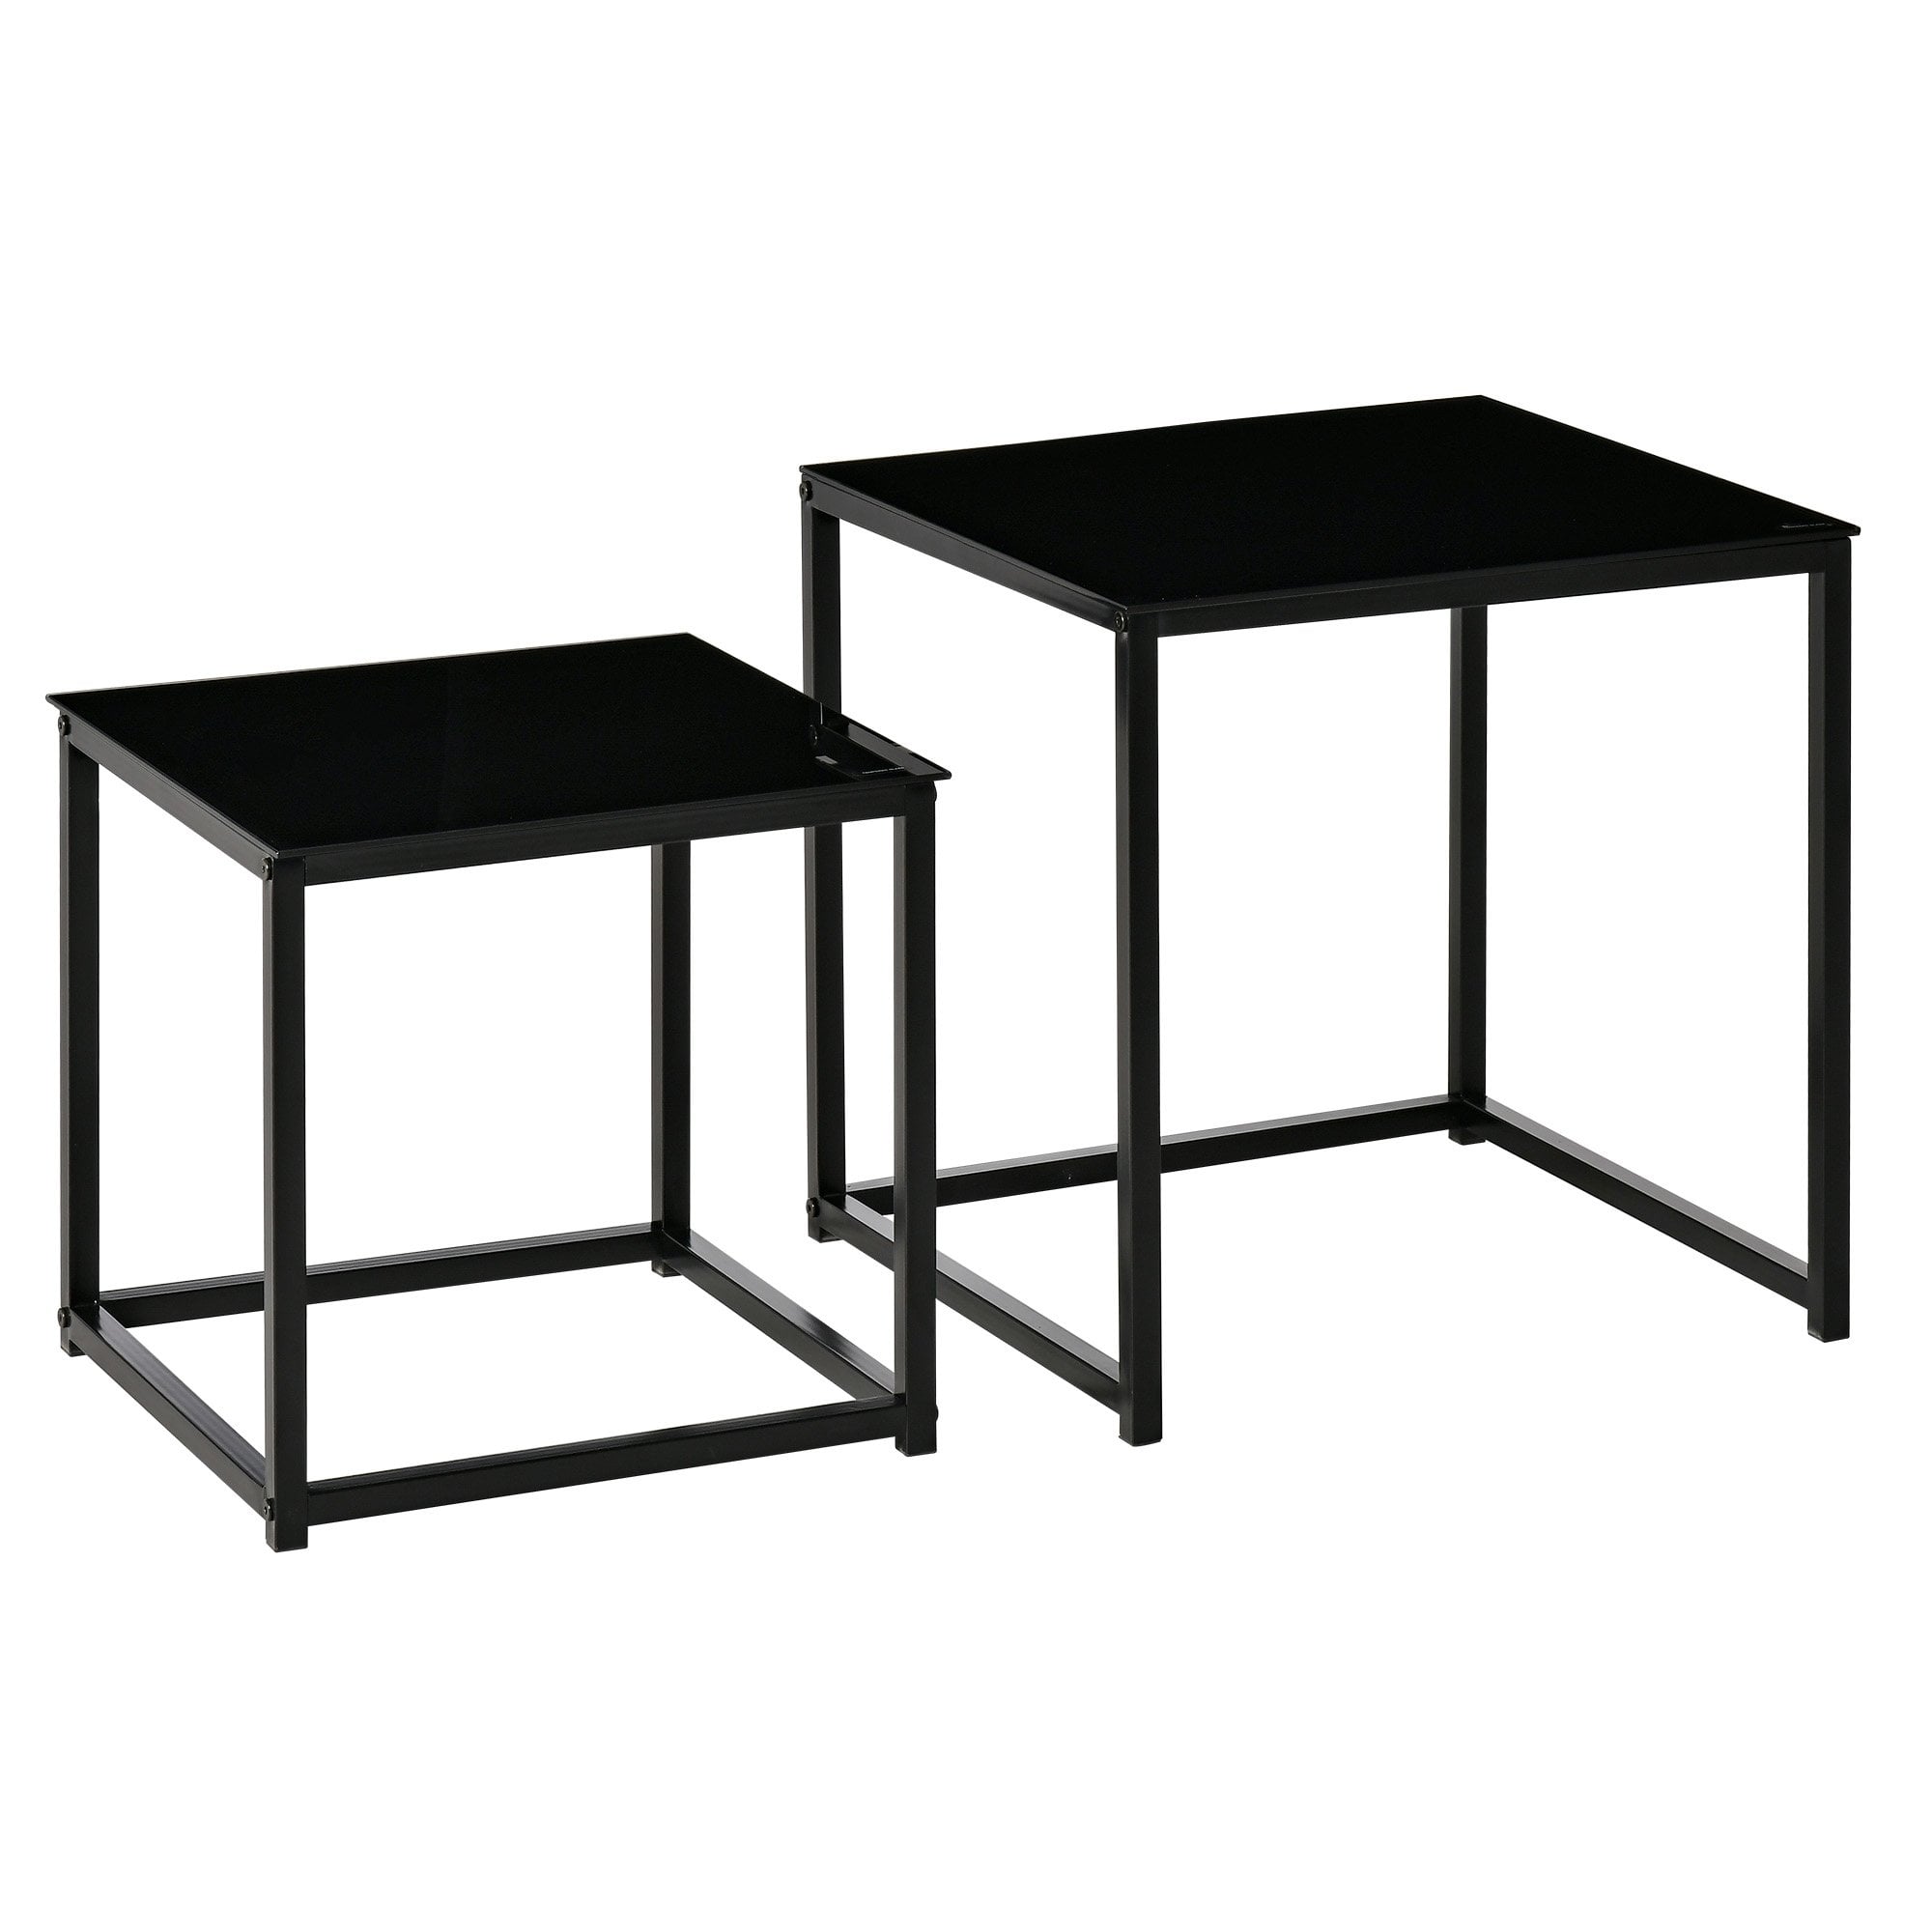 Nest of 2 Side Tables - Set of Modern Bedside Tables with Tempered Glass Desktop for Living Room - Bedroom - Office - Black - Home Living  | TJ Hughes